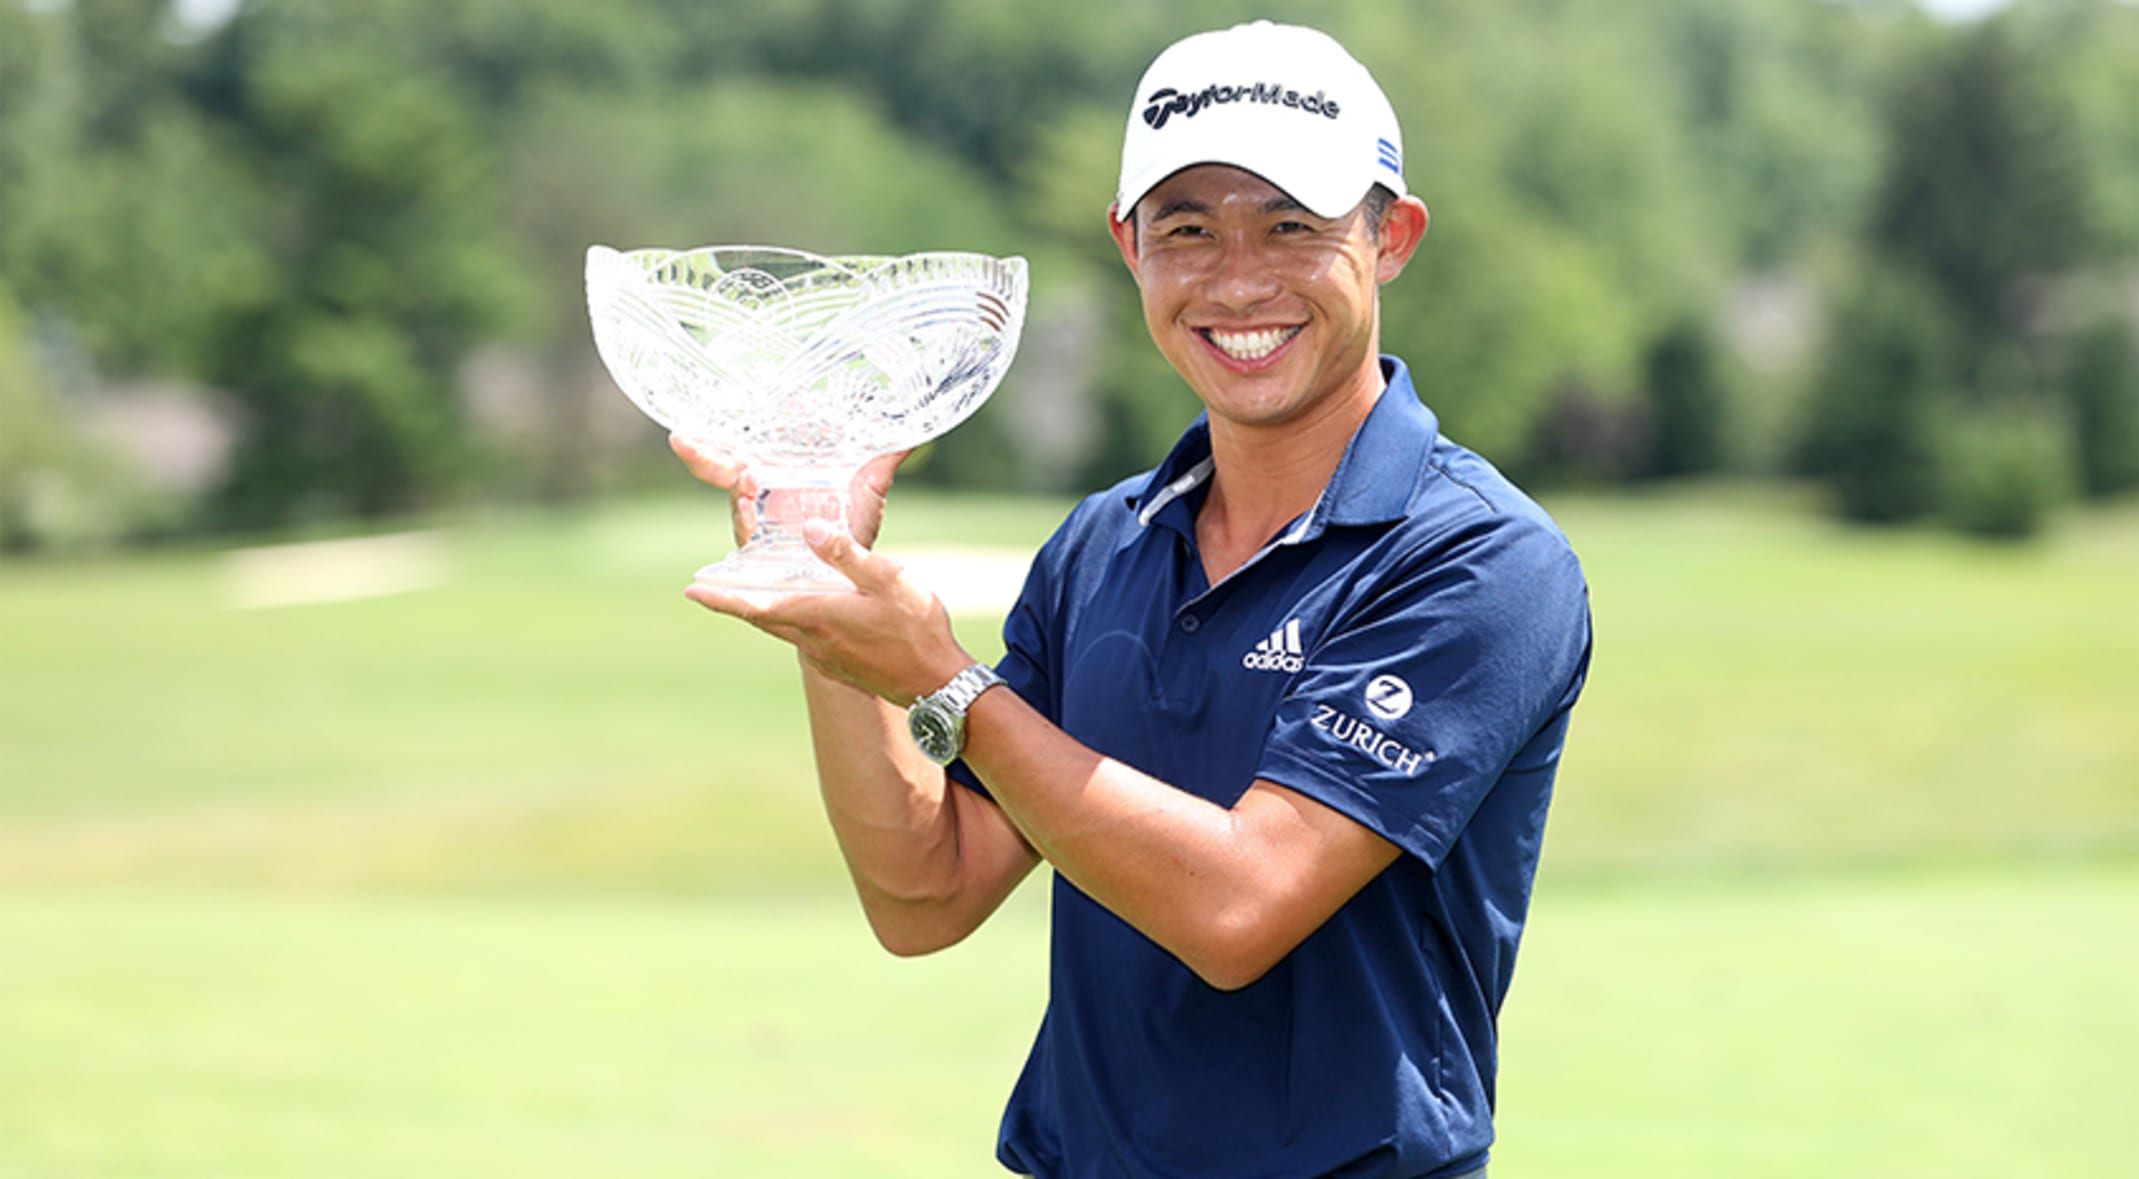 Điều gì đưa Collin Morikawa đến chiến thắng PGA?